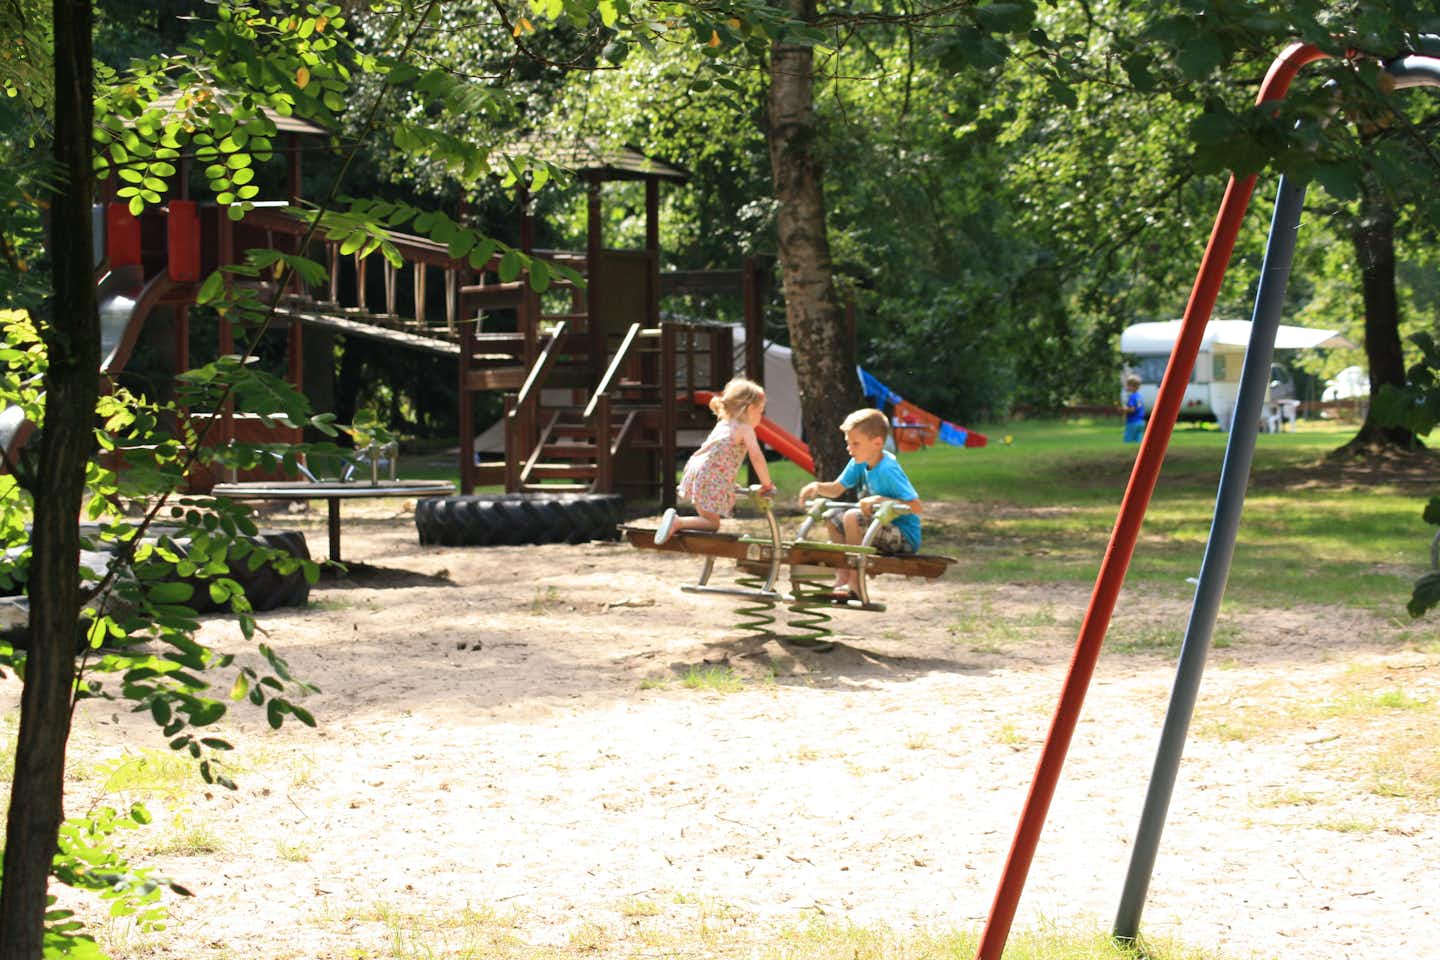 Vodatent @ Vakantiepark Herperduin  - Kinderspielplatz auf dem Campingplatz